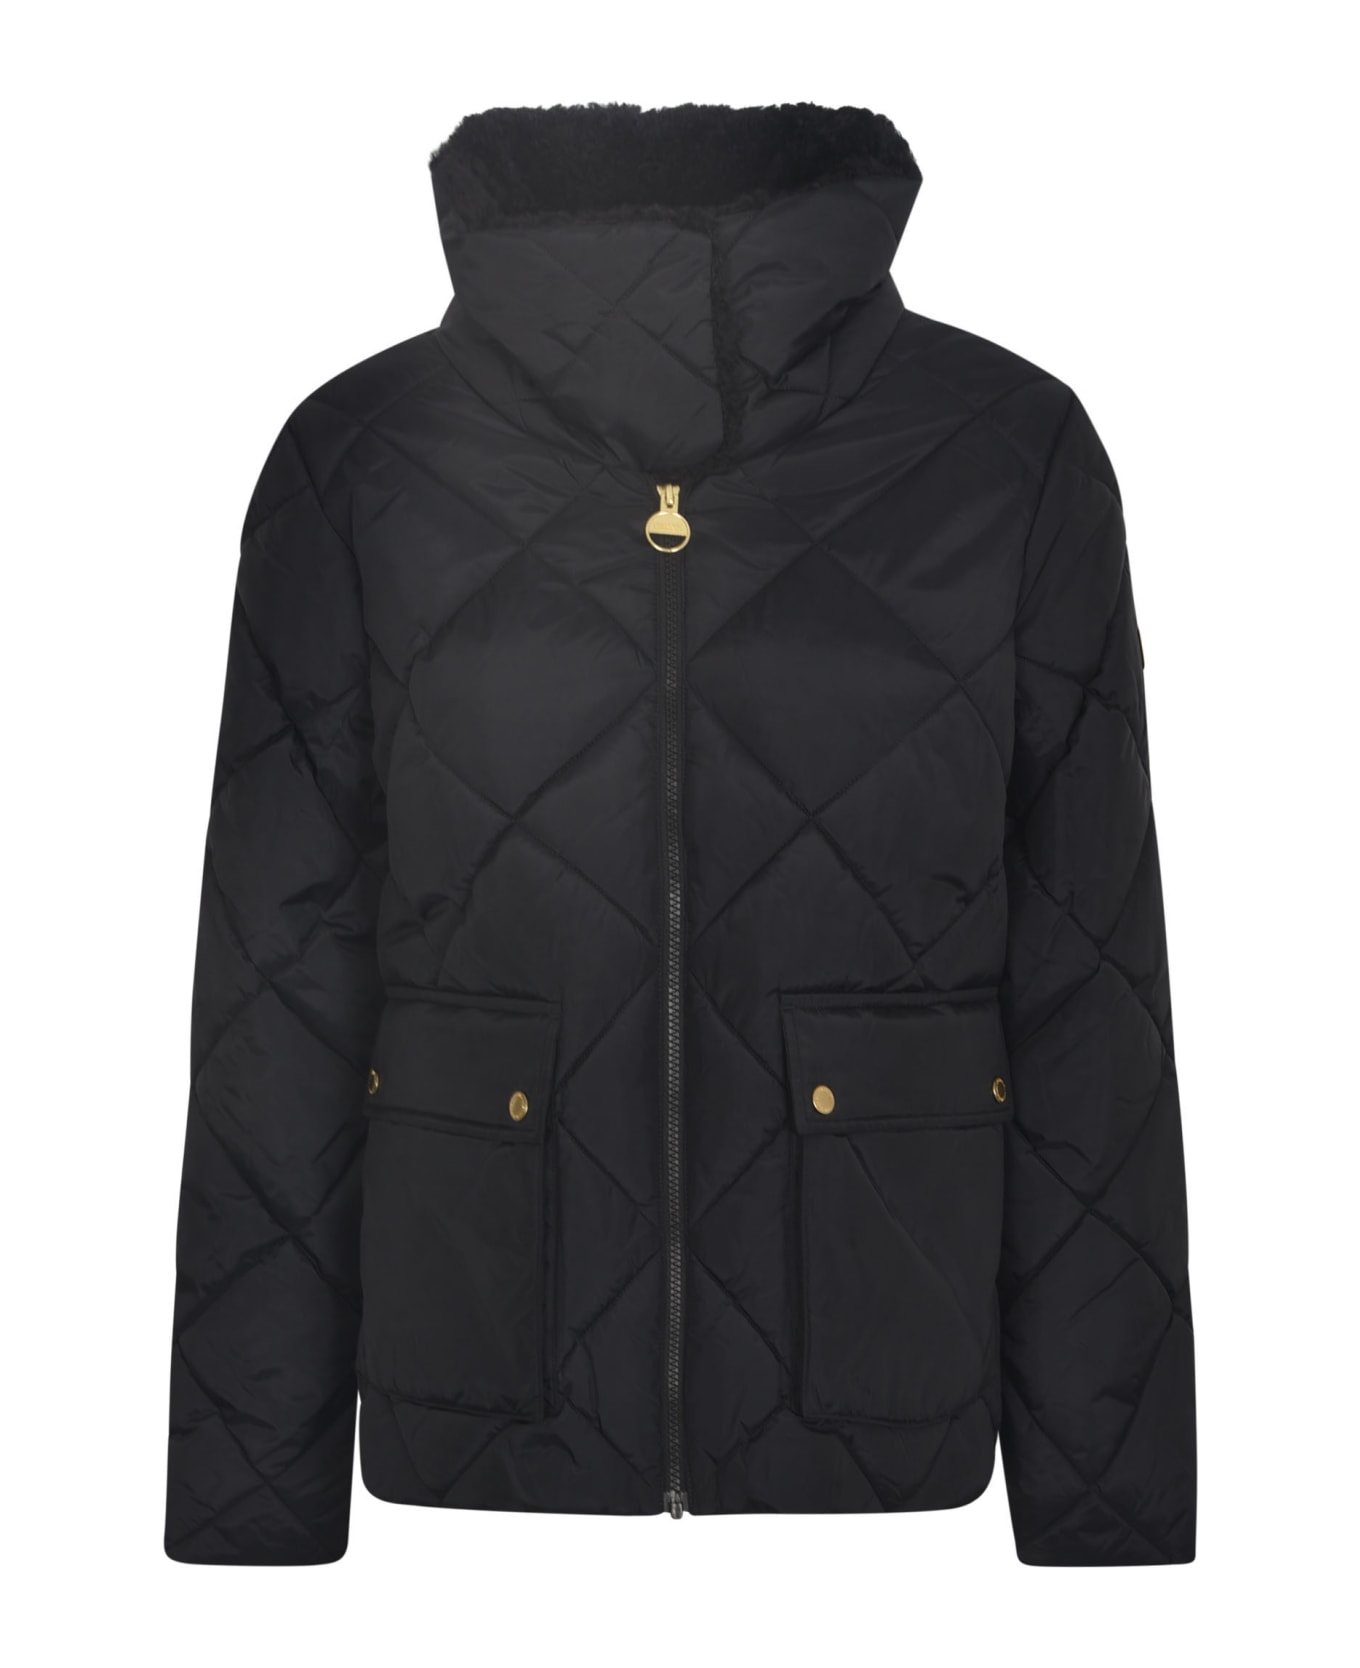 Barbour Quilted Zip Classic Jacket - Black ジャケット